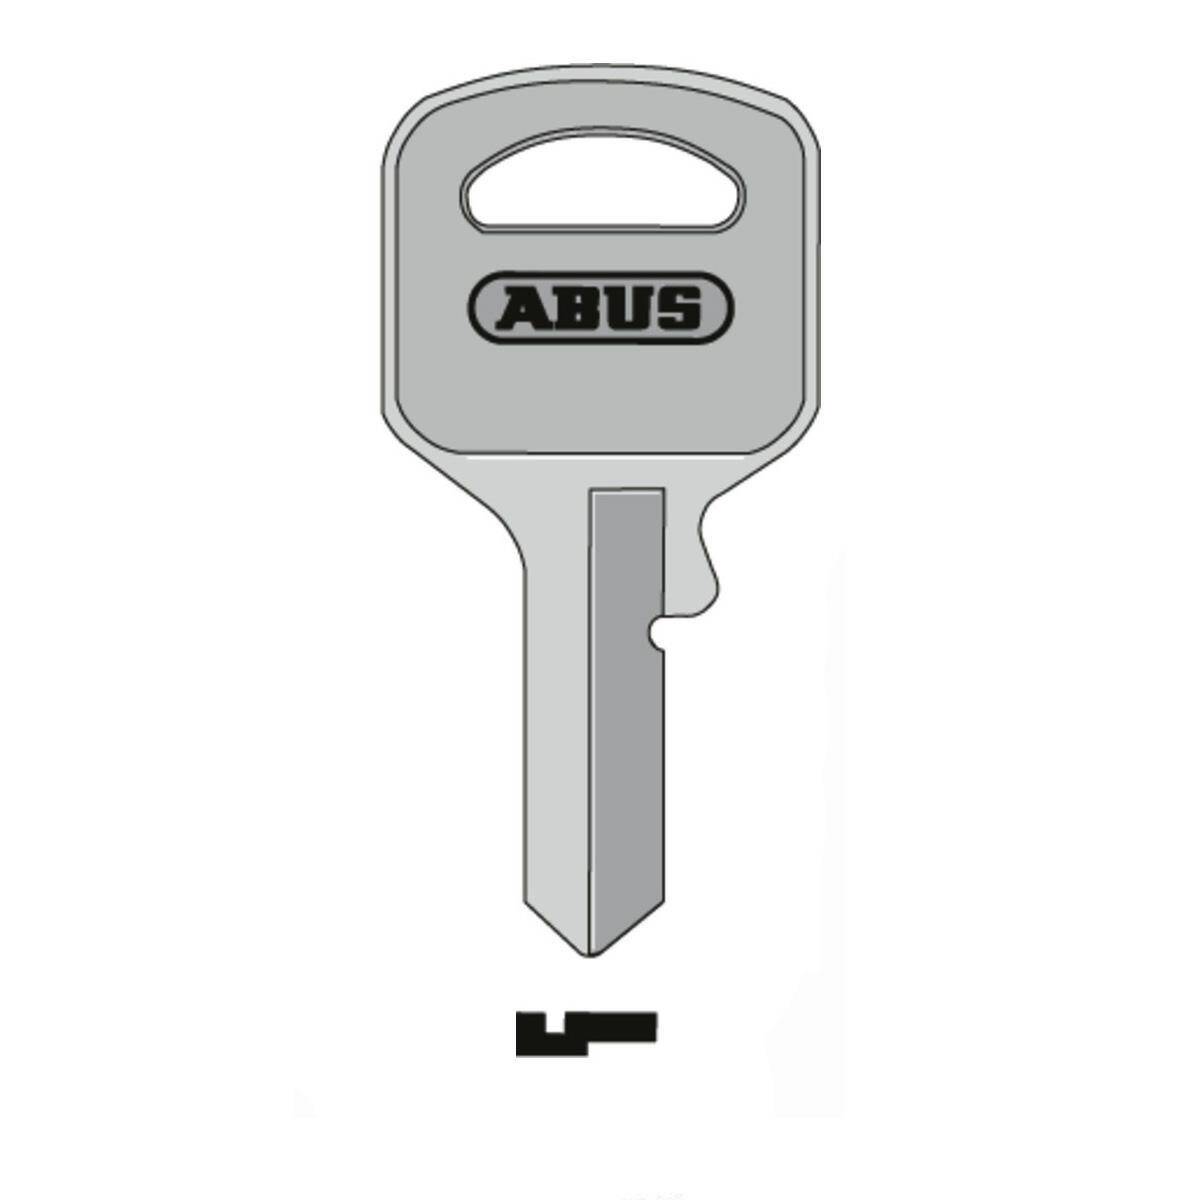 ABUS key 55/25